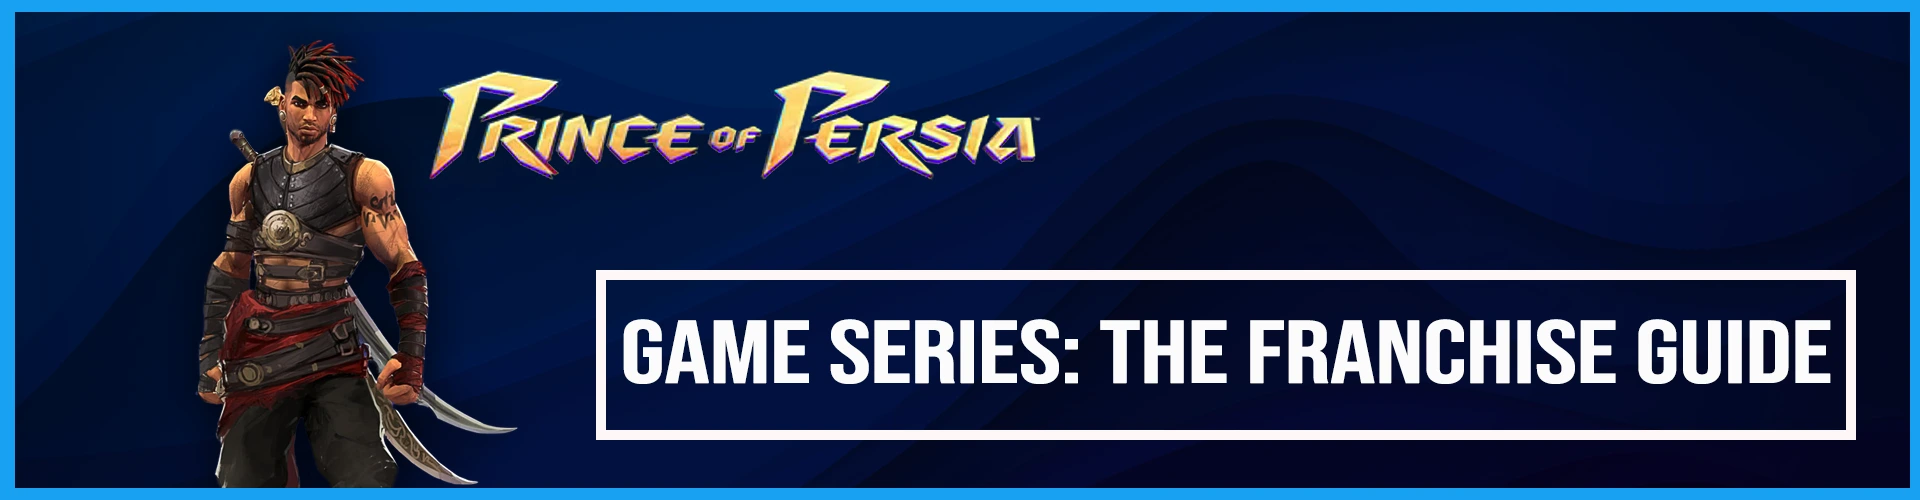 La Série des Jeux Prince of Persia: Le Guide de la Franchise